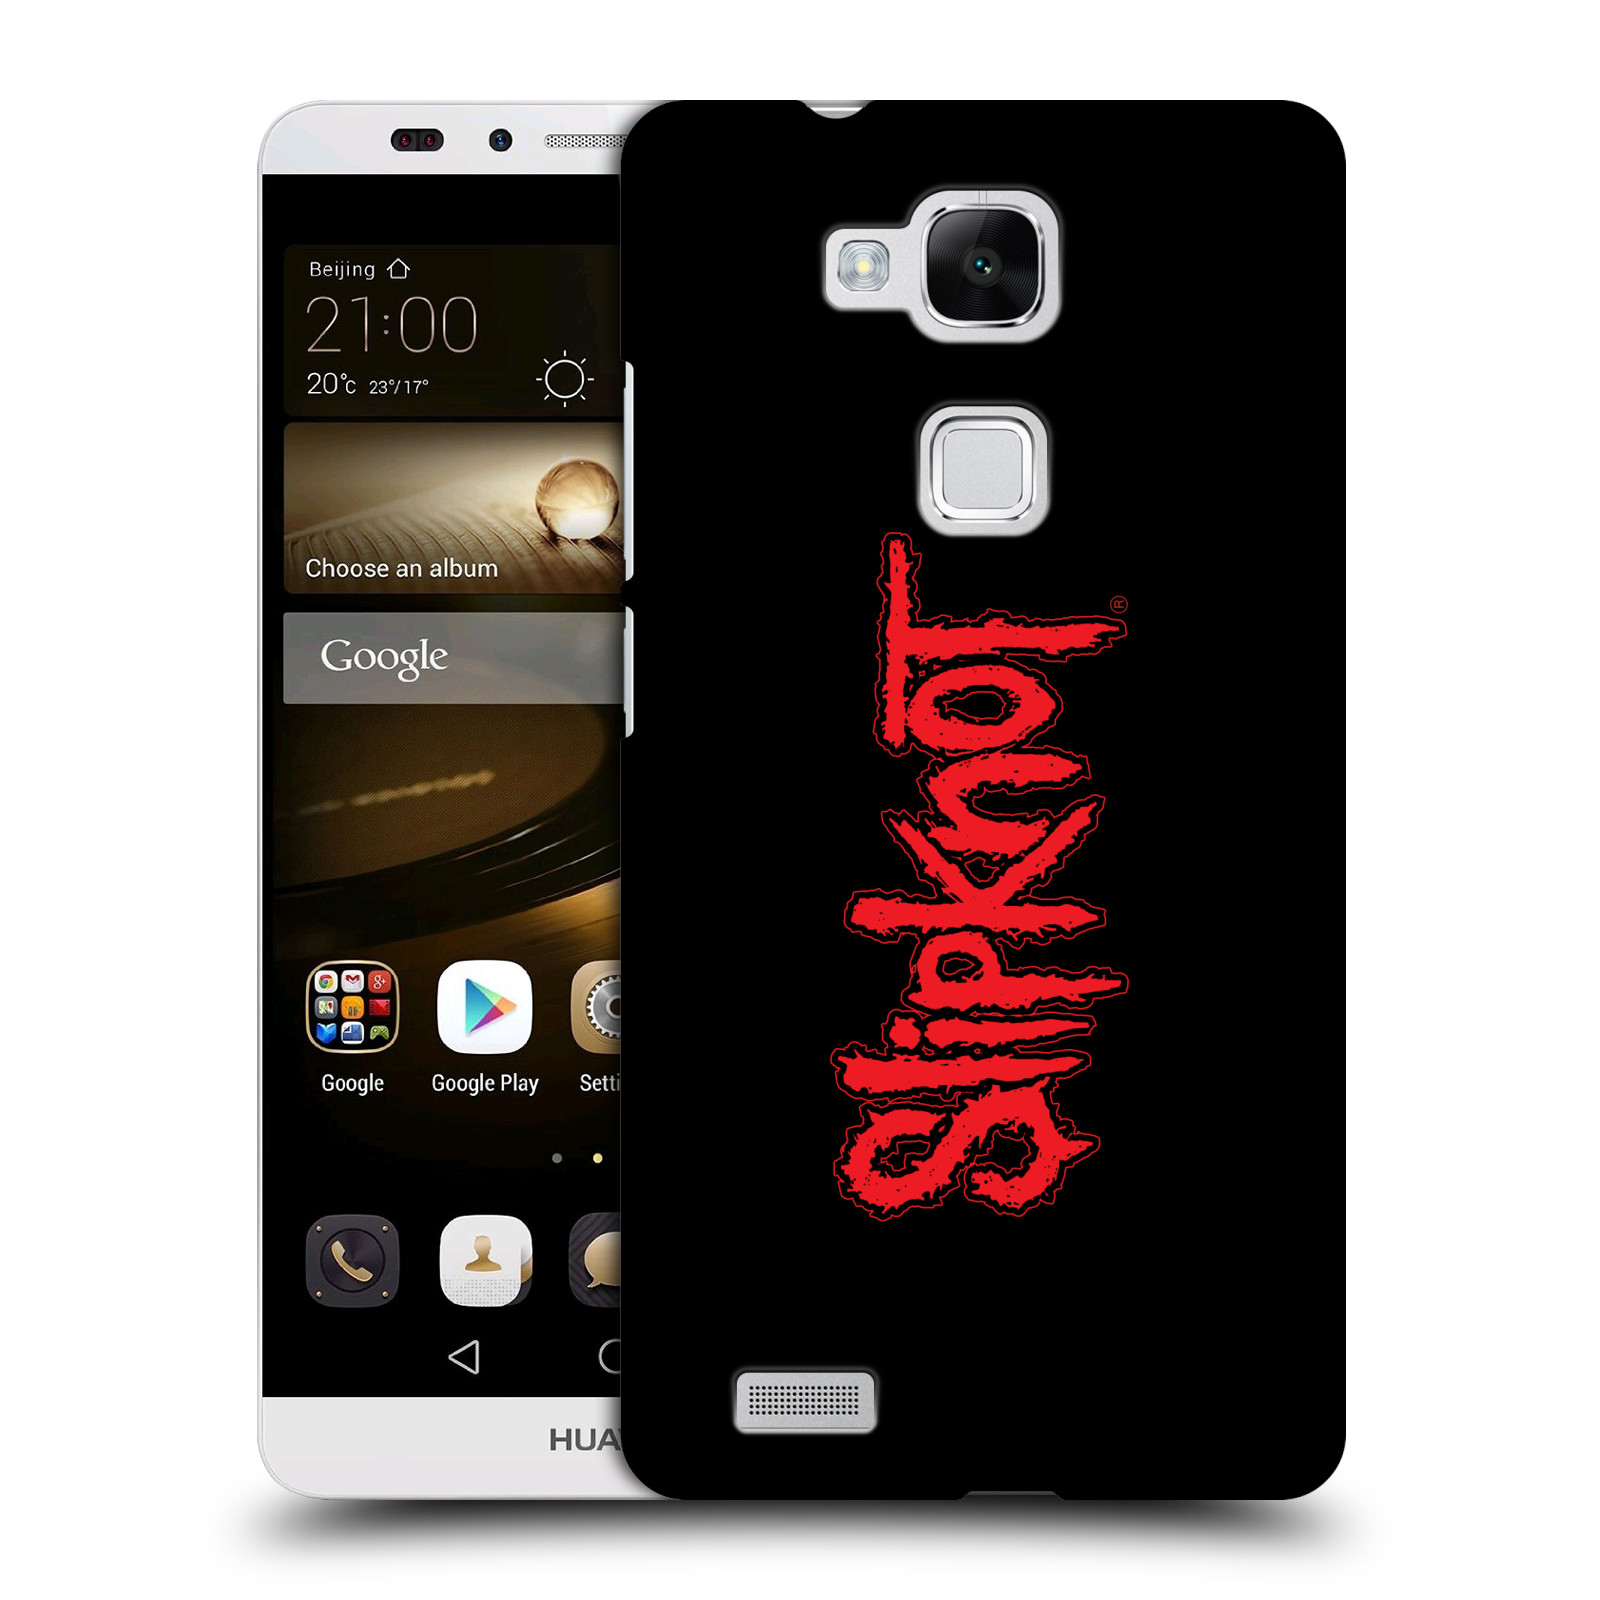 HEAD CASE plastový obal na mobil Huawei Mate 7 hudební skupina Slipknot logo velké